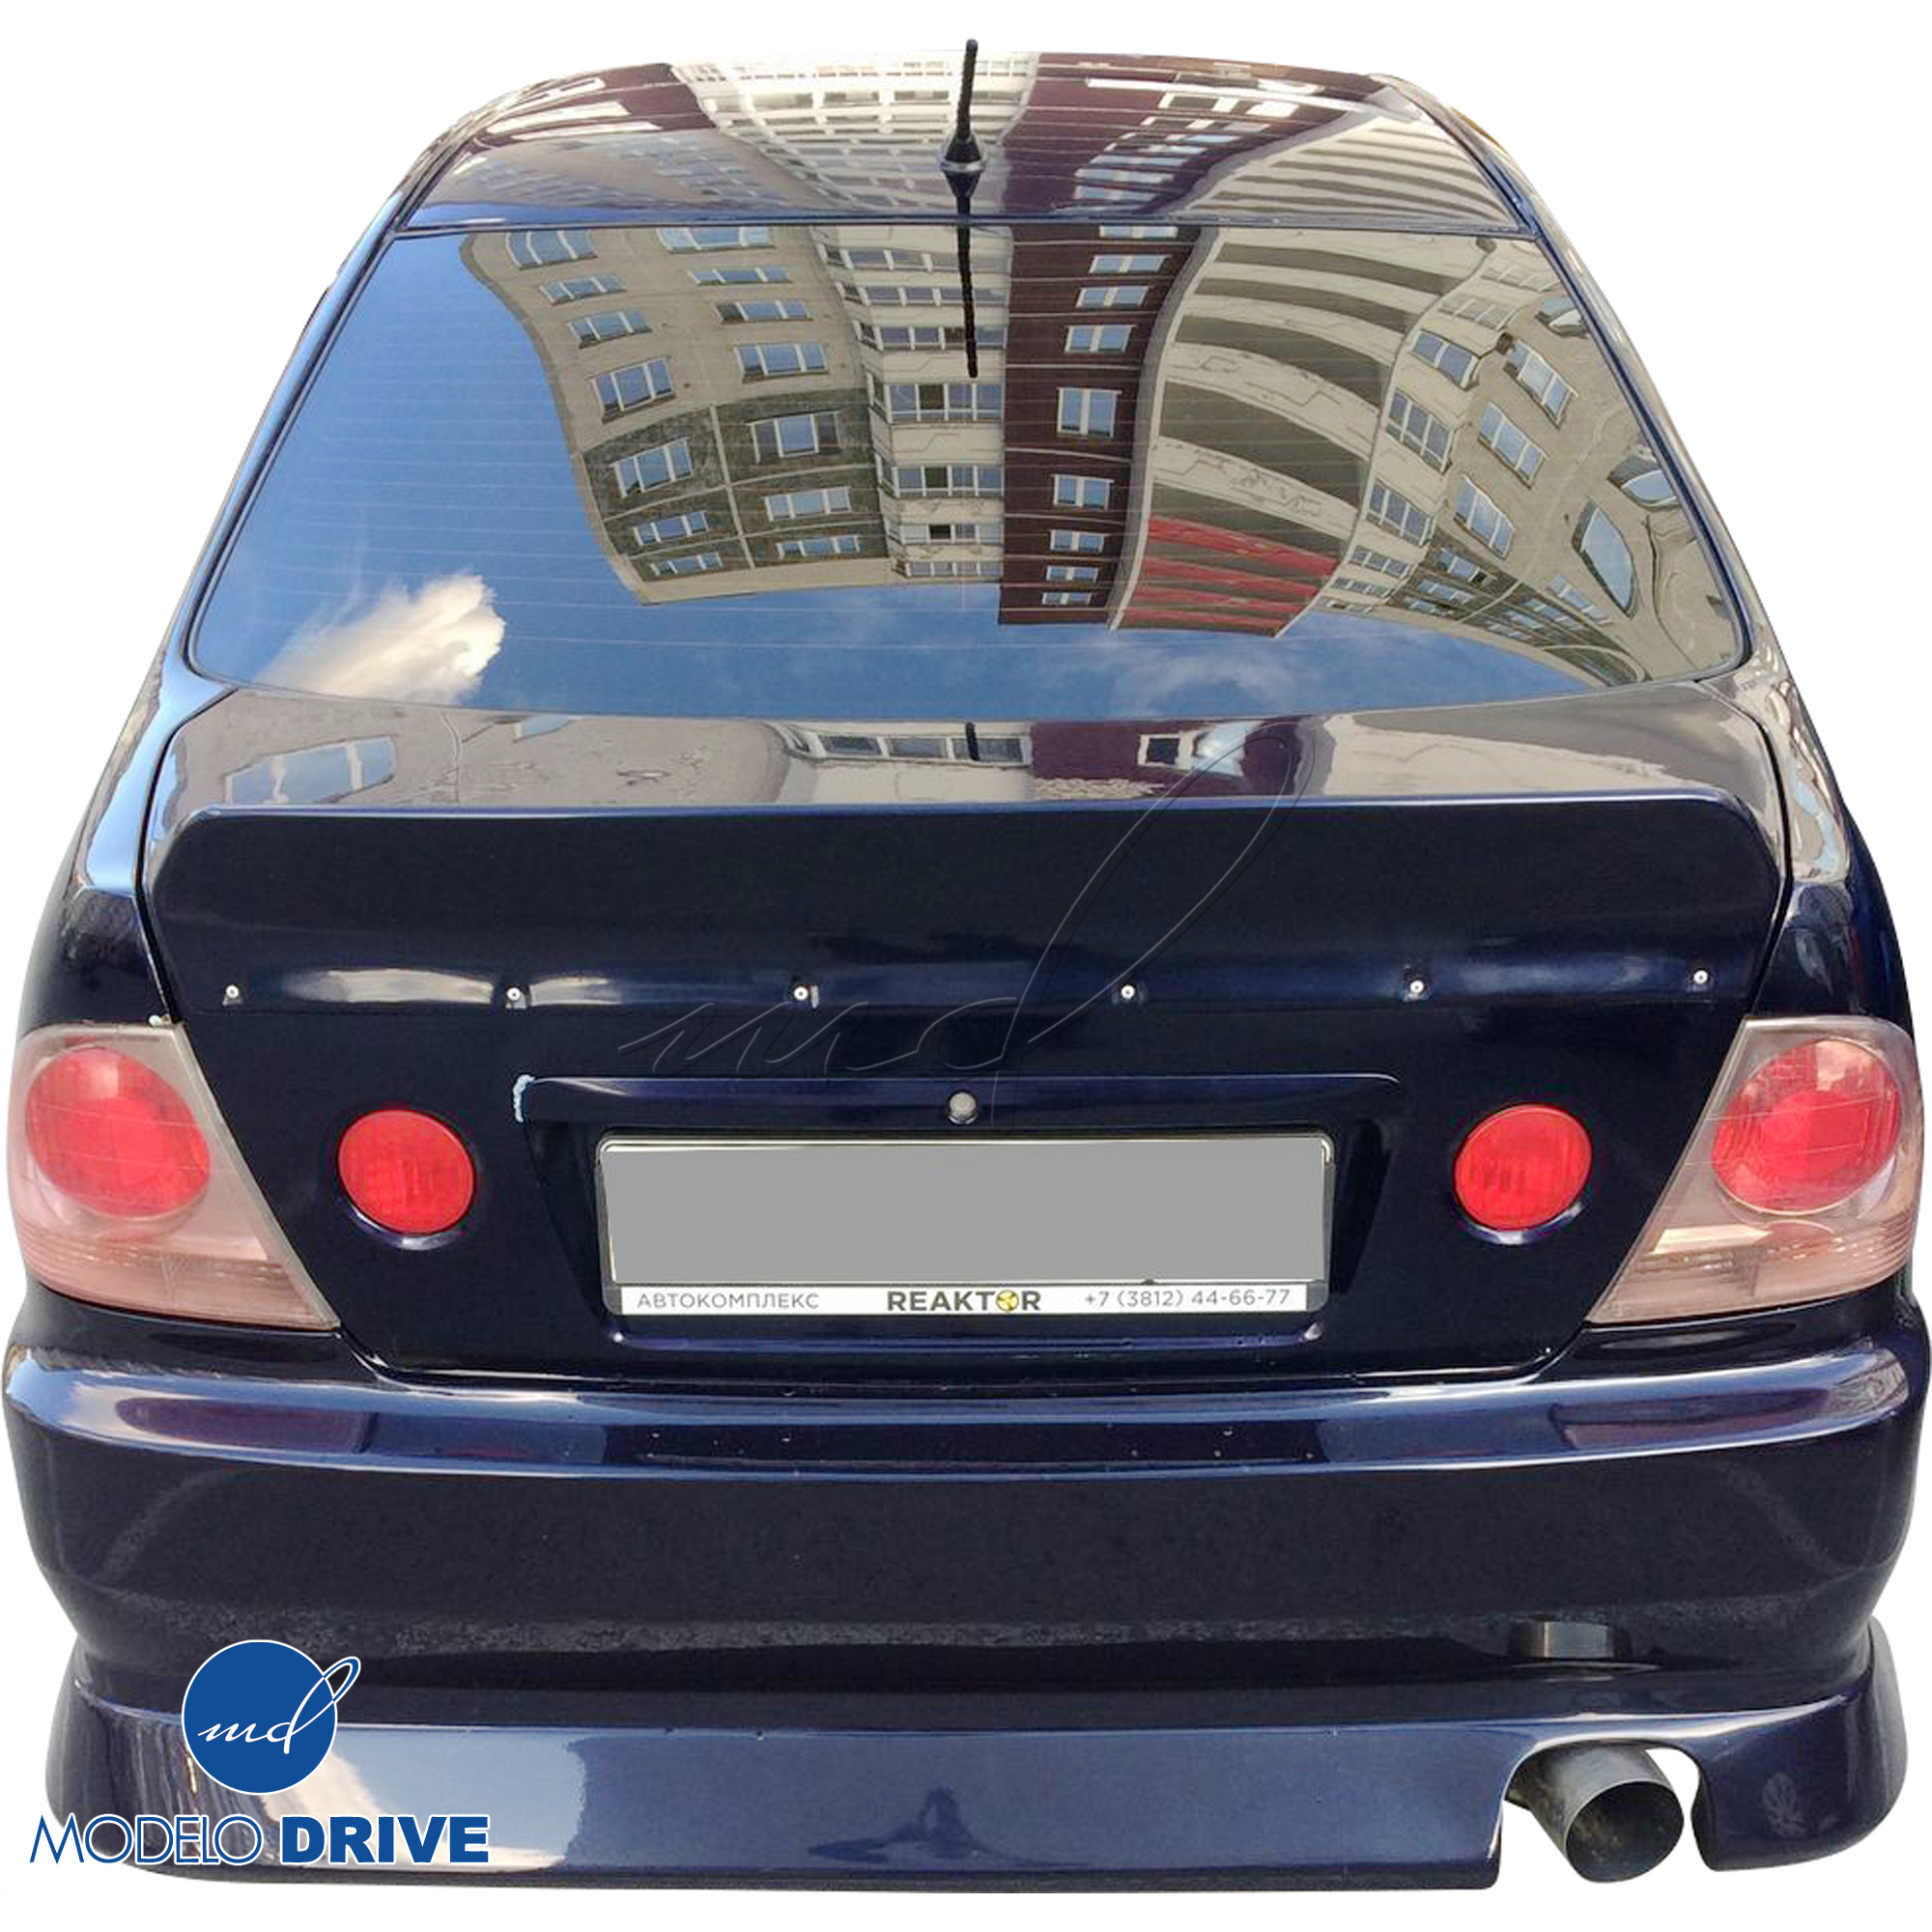 ModeloDrive FRP BSPO Rear Bumper > Lexus IS300 2000-2005> 4dr - Image 8